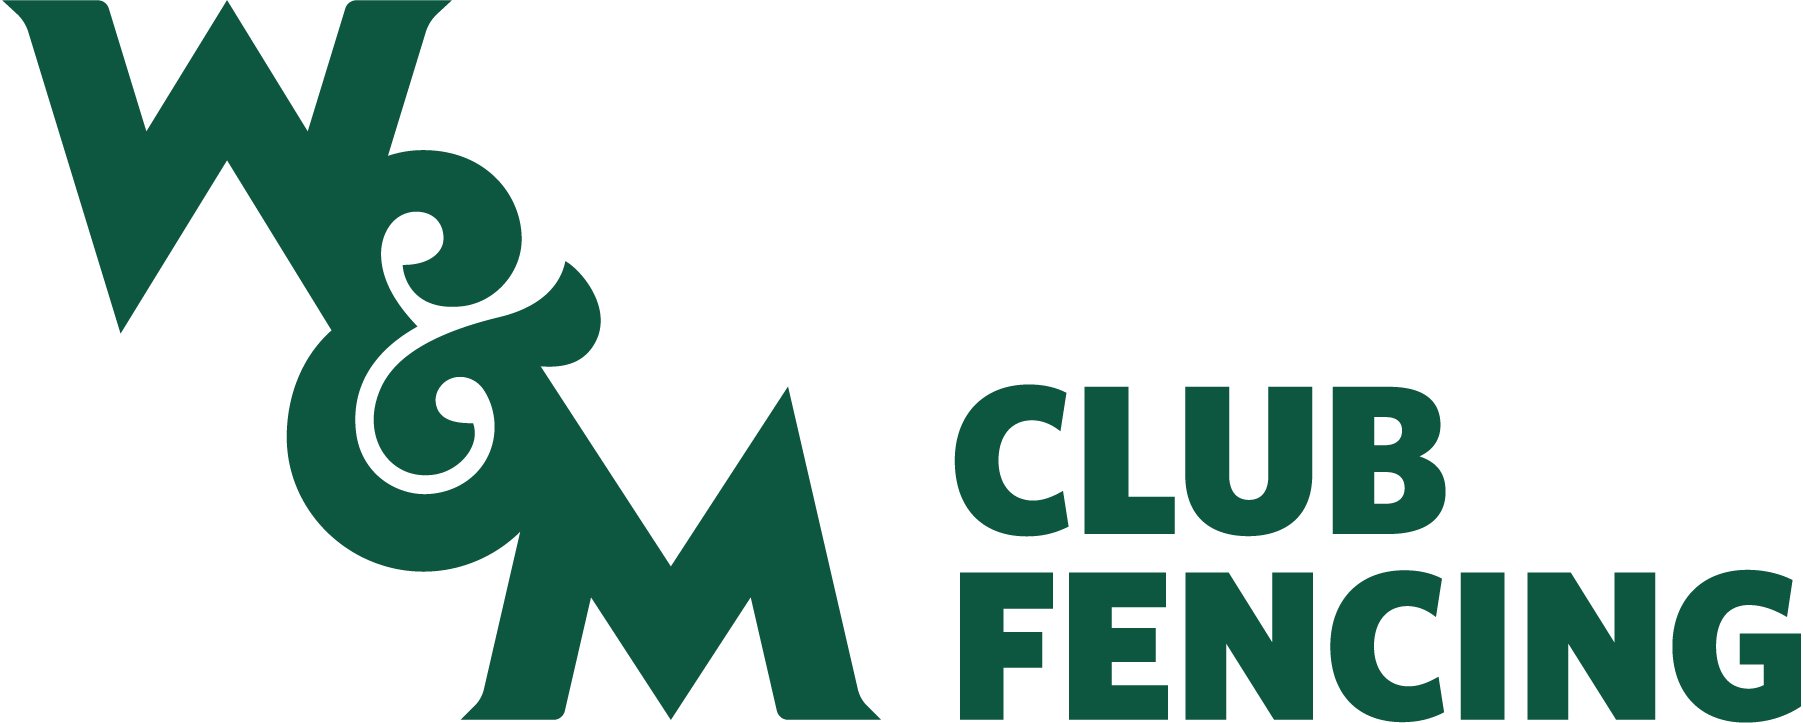 Fencing Club Logo